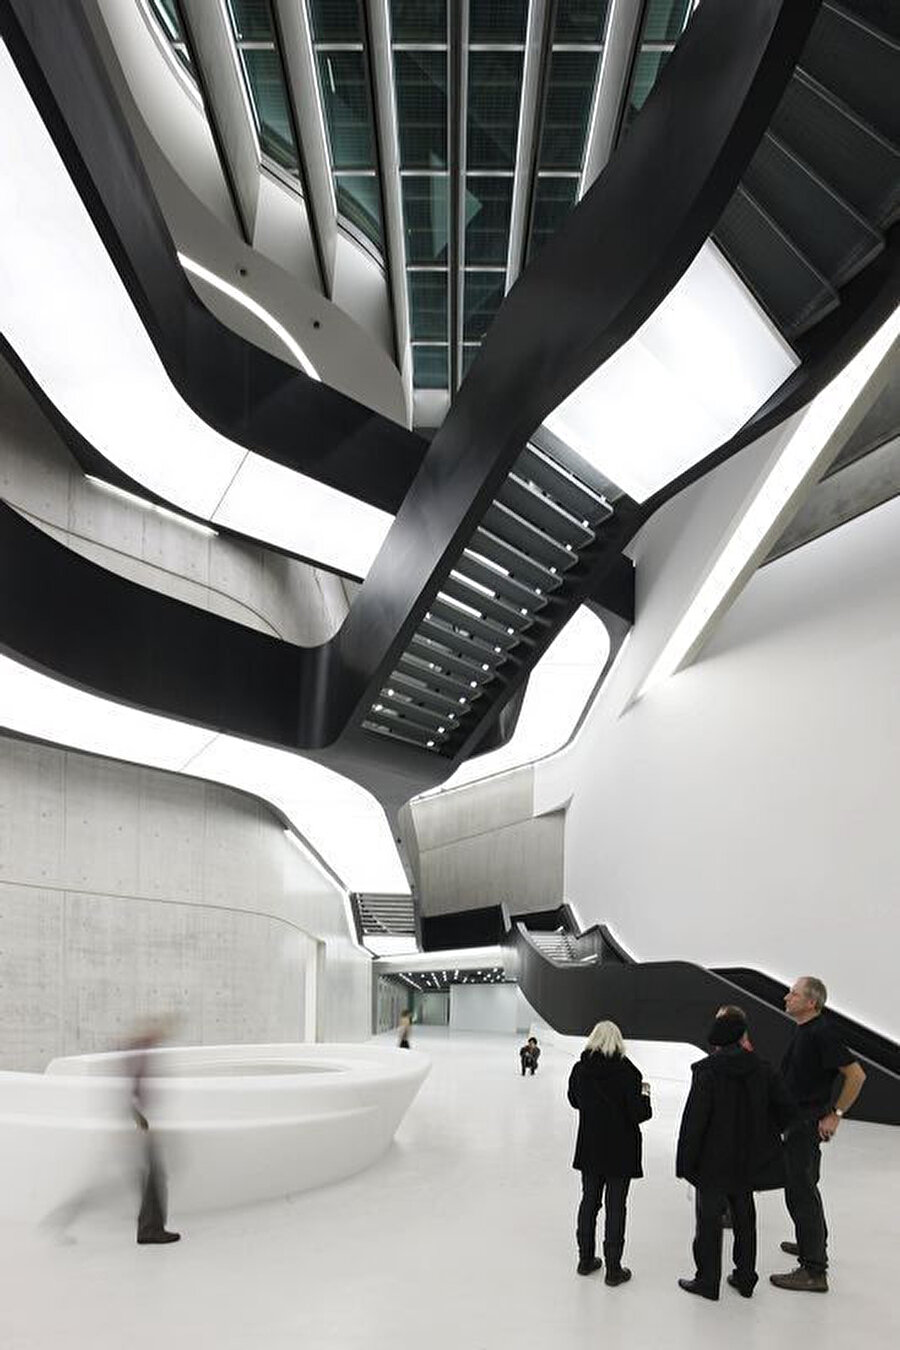 Merdiven; rengiyle, konumu ve formuyla müzenin en dikkat çekici mimari ögelerinden oluyor.